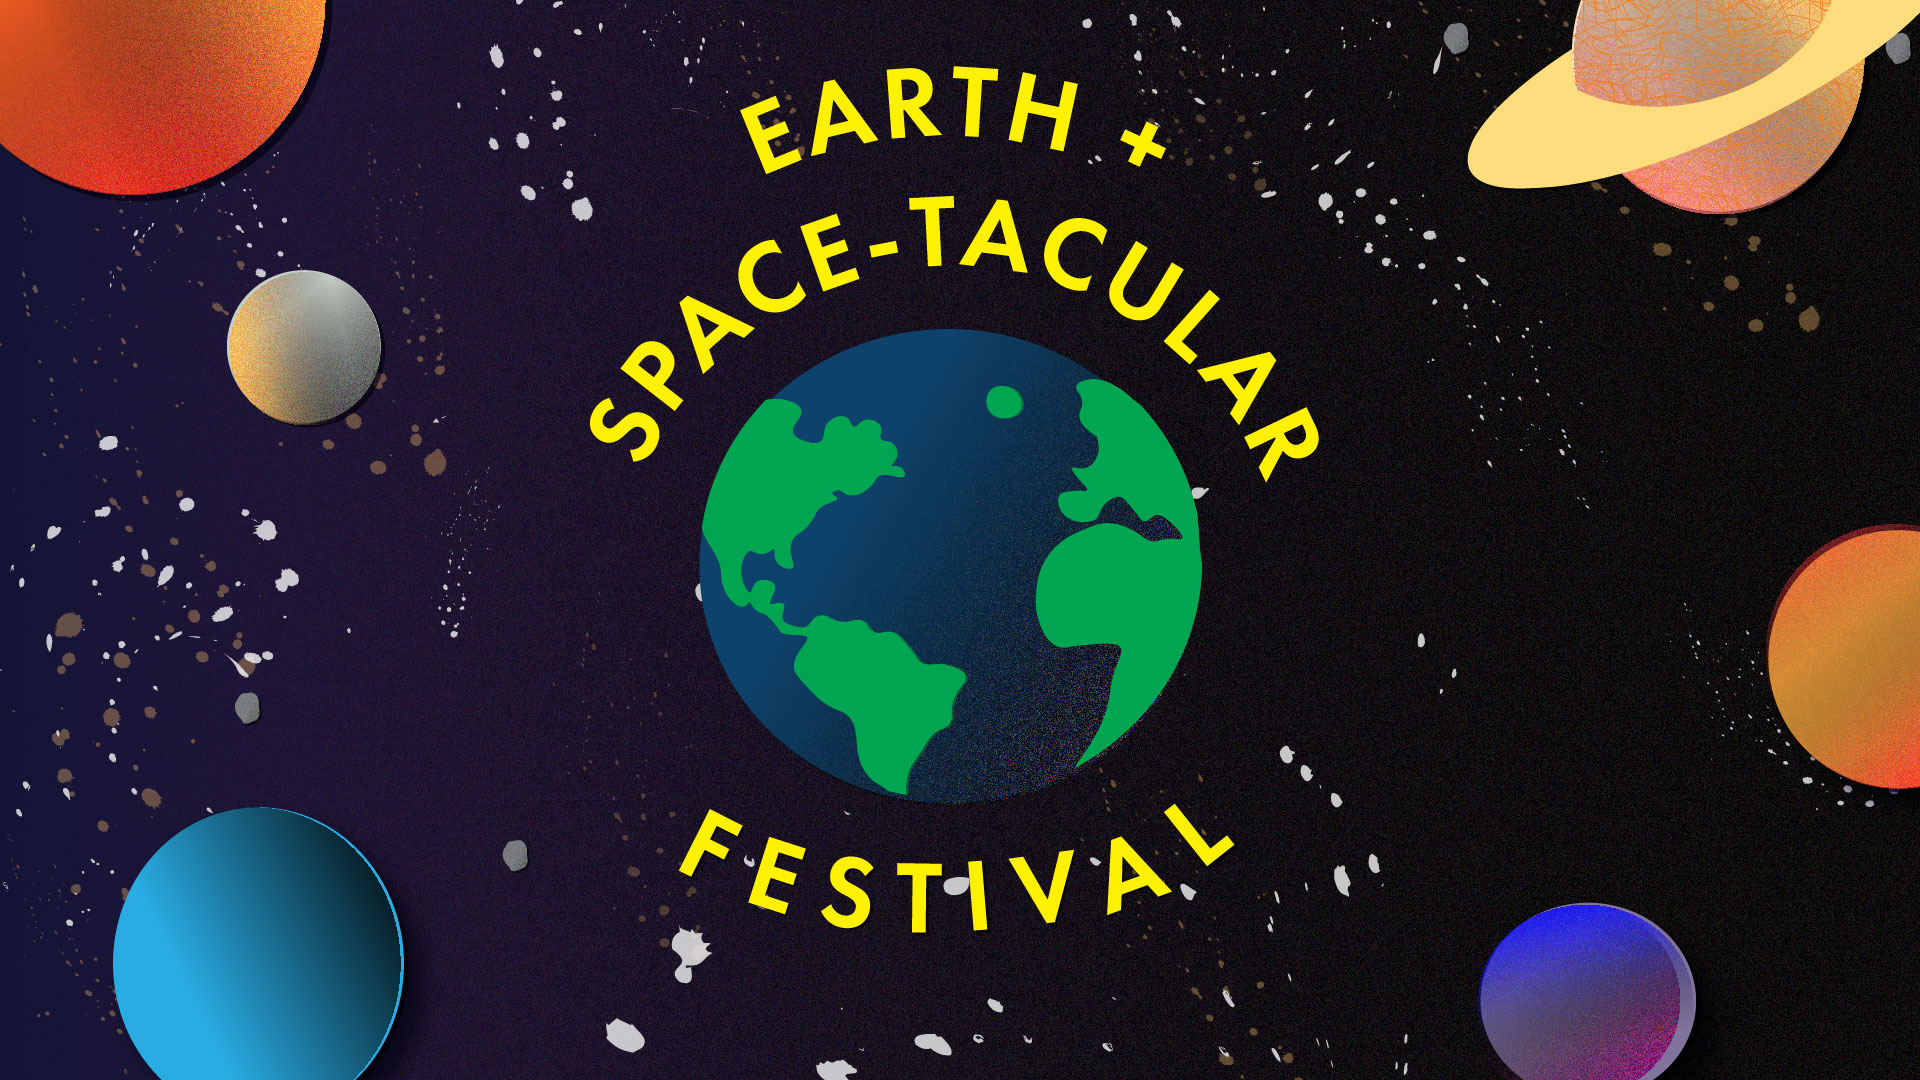 Earth + Space-tacular Festival